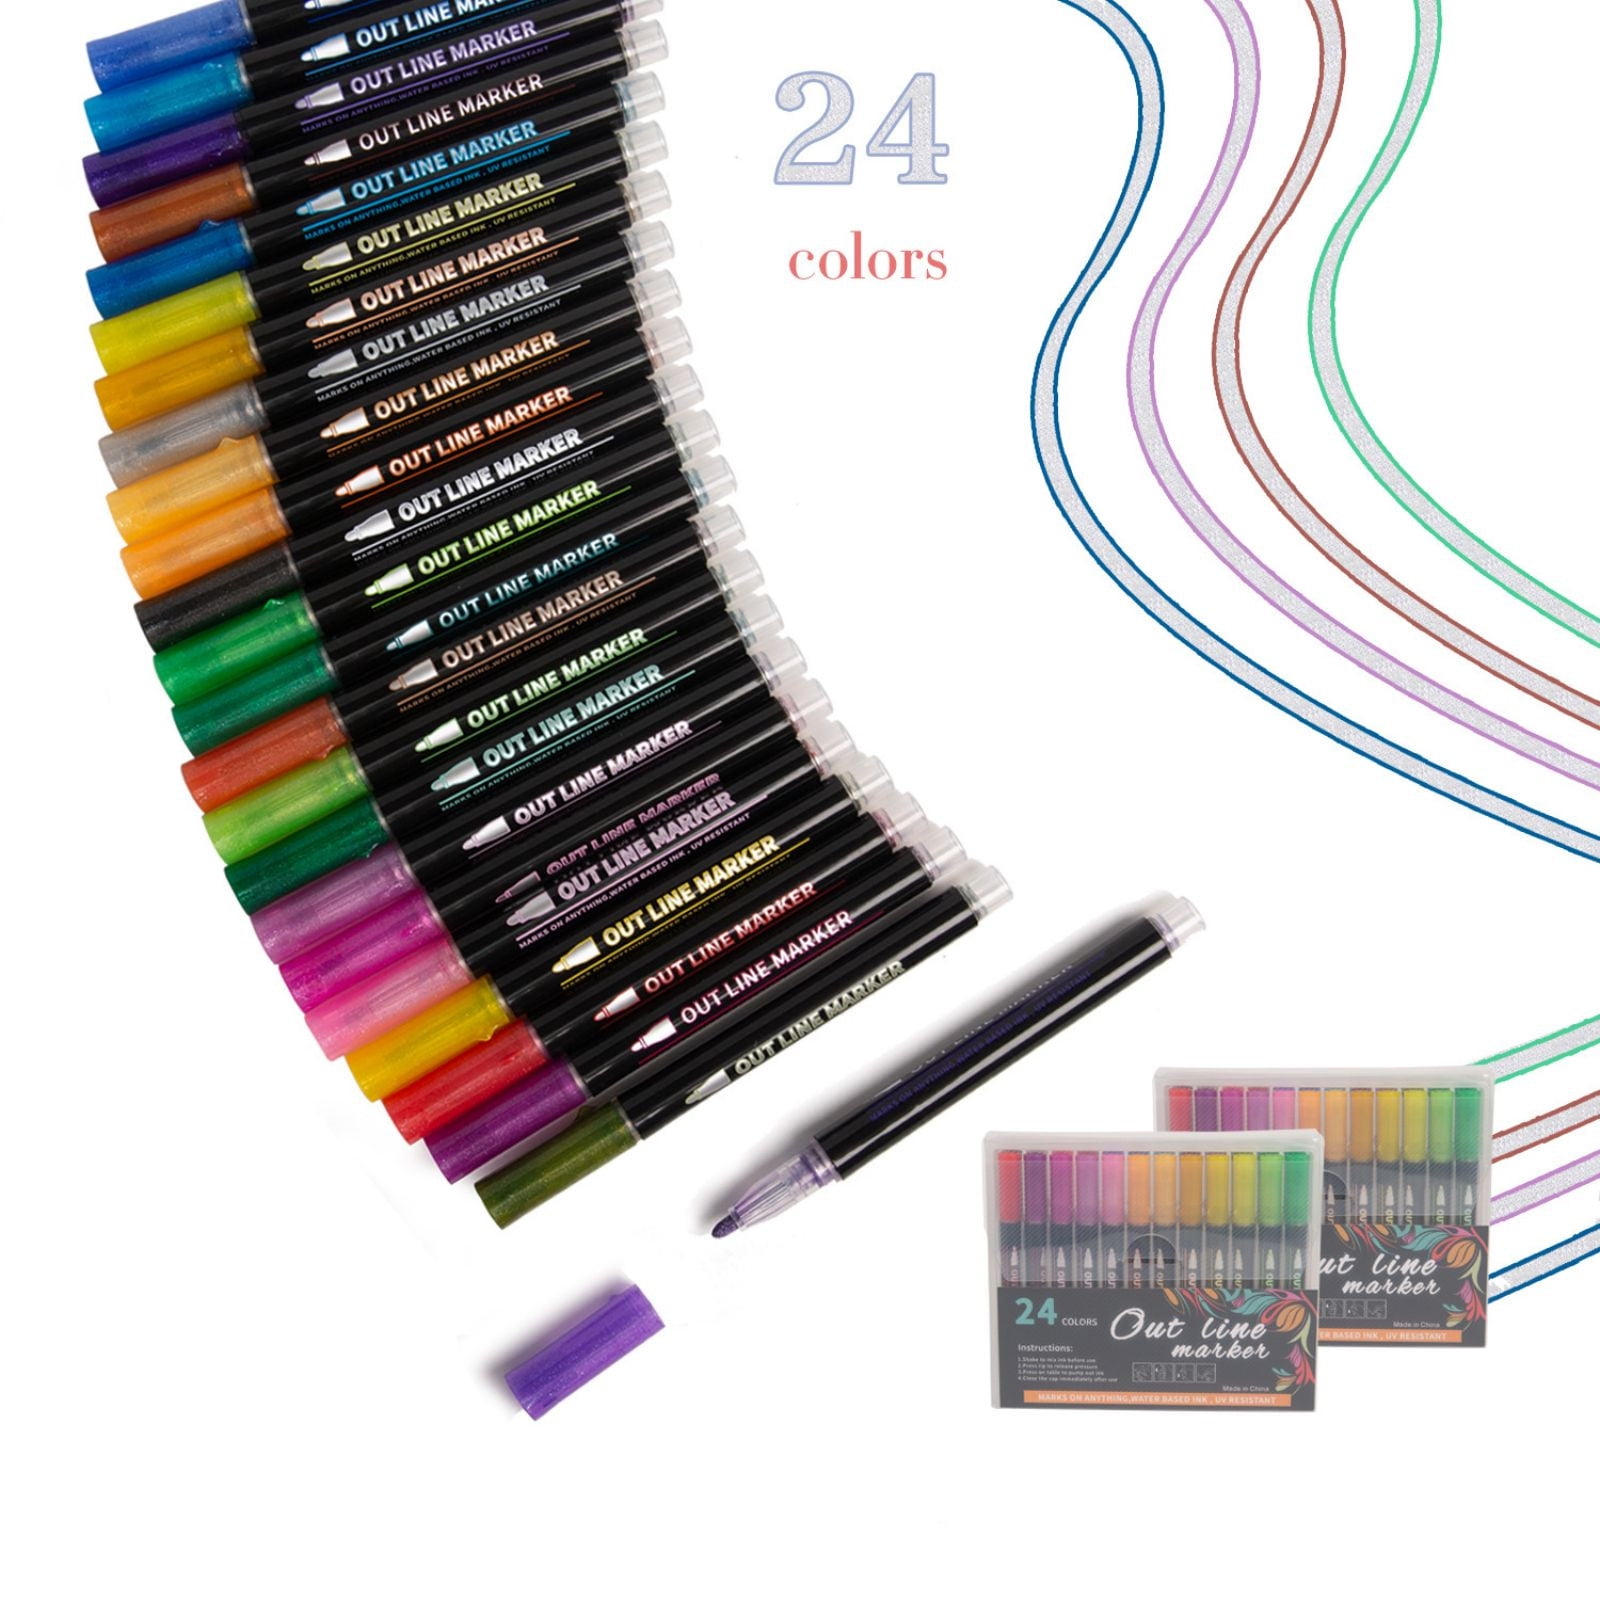 Mr. Pen- Watercolor Brush Pens, 6 pcs, Water Brush Pens for